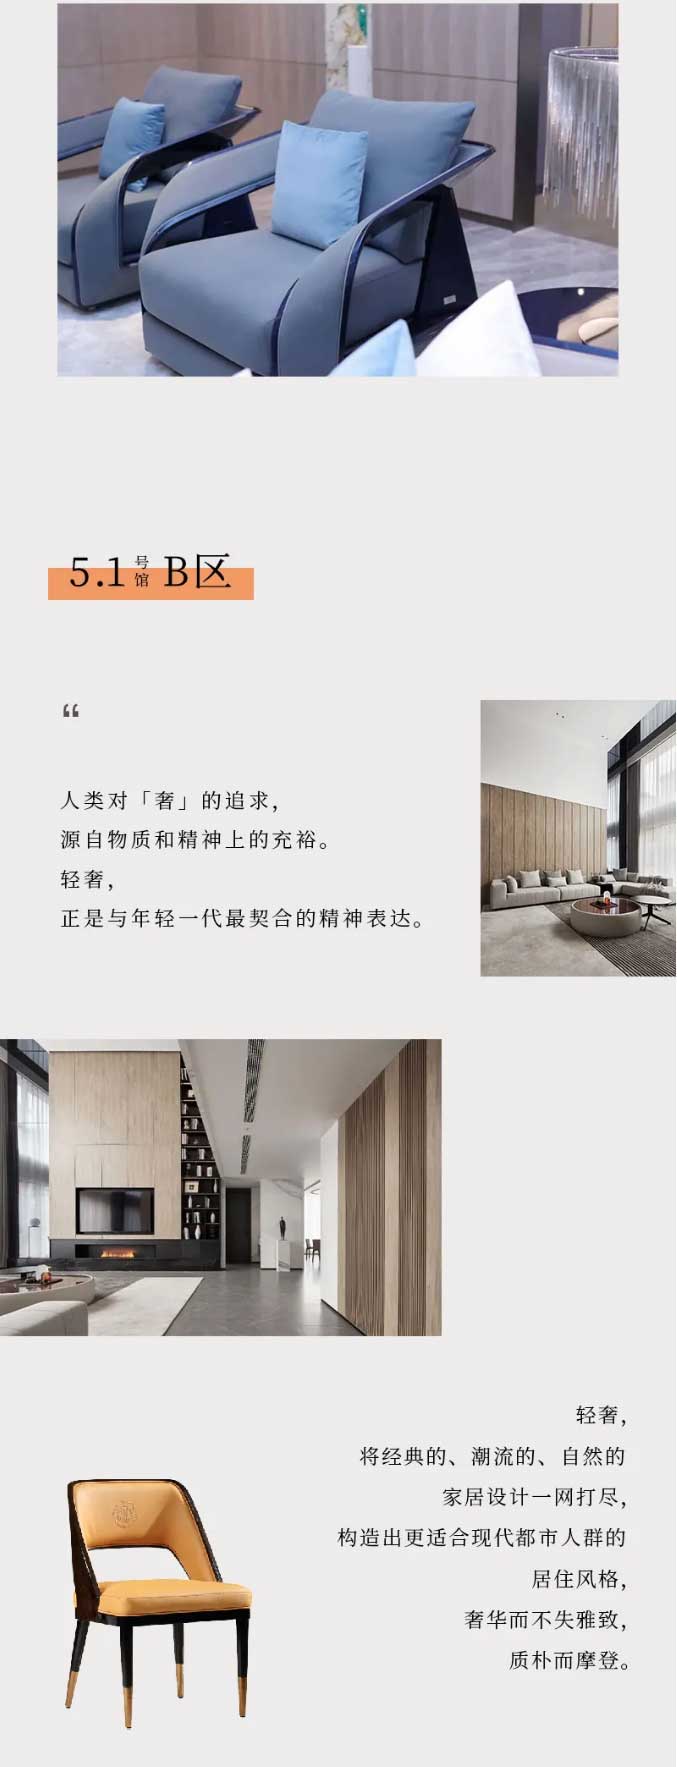 CIFF上海虹桥--极简轻奢并行，新锐设计馆缔造都市新贵人生！_看图王_04.jpg